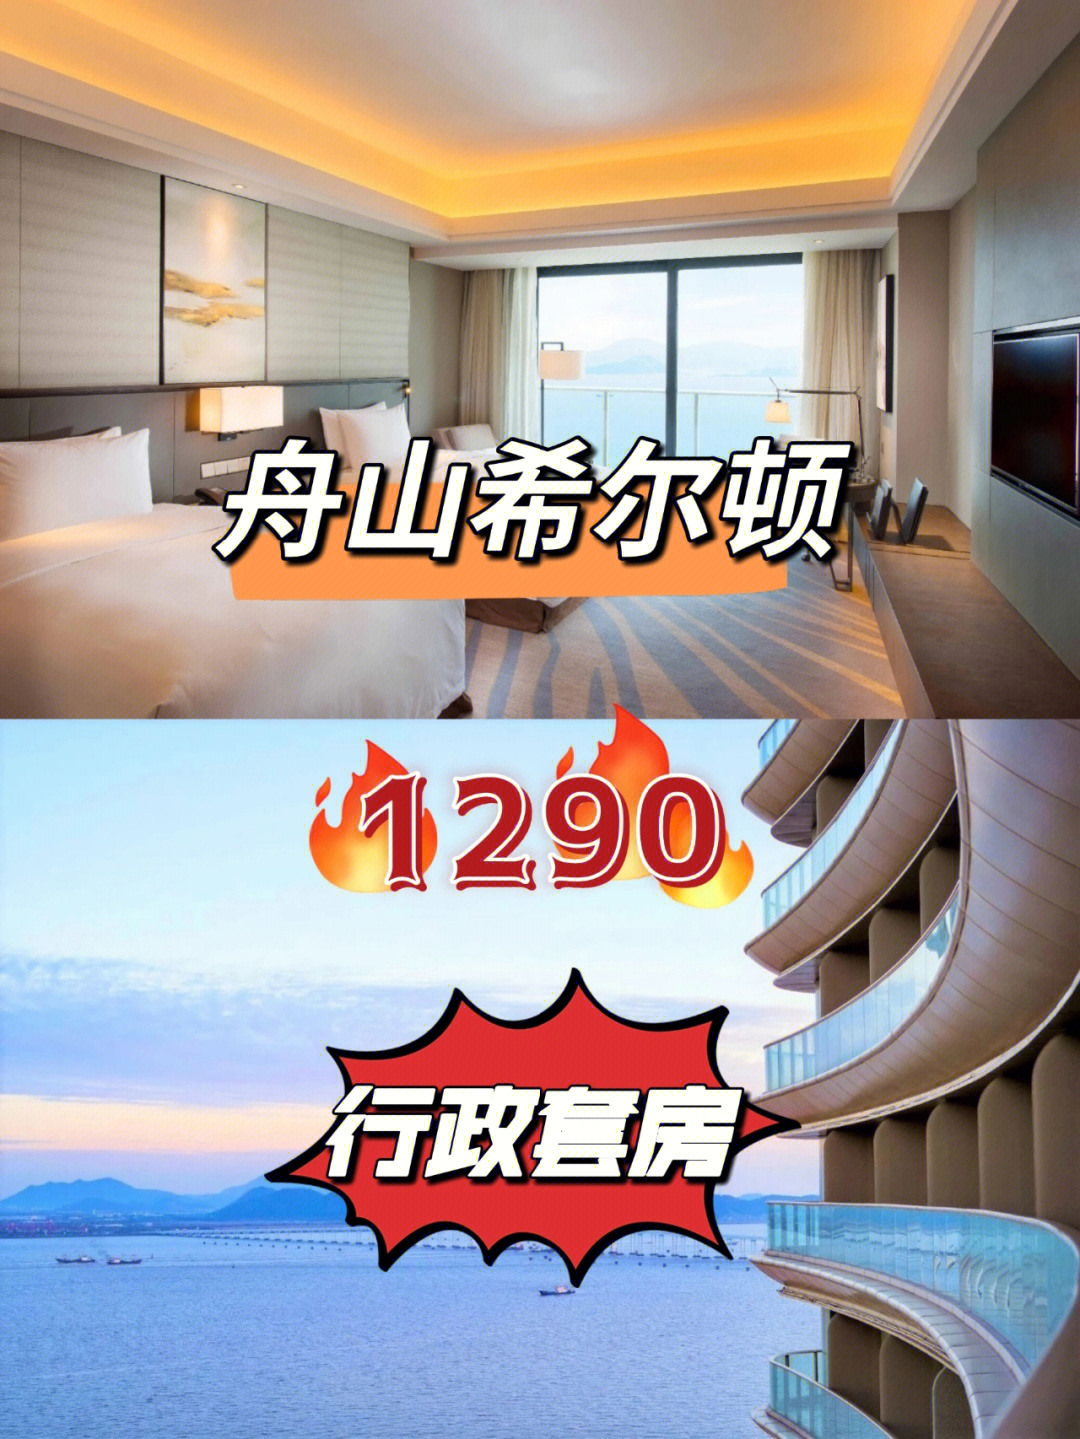 千岛之城舟山的第一家希尔顿集团酒店在2015年初开业,位于沈家门海珠